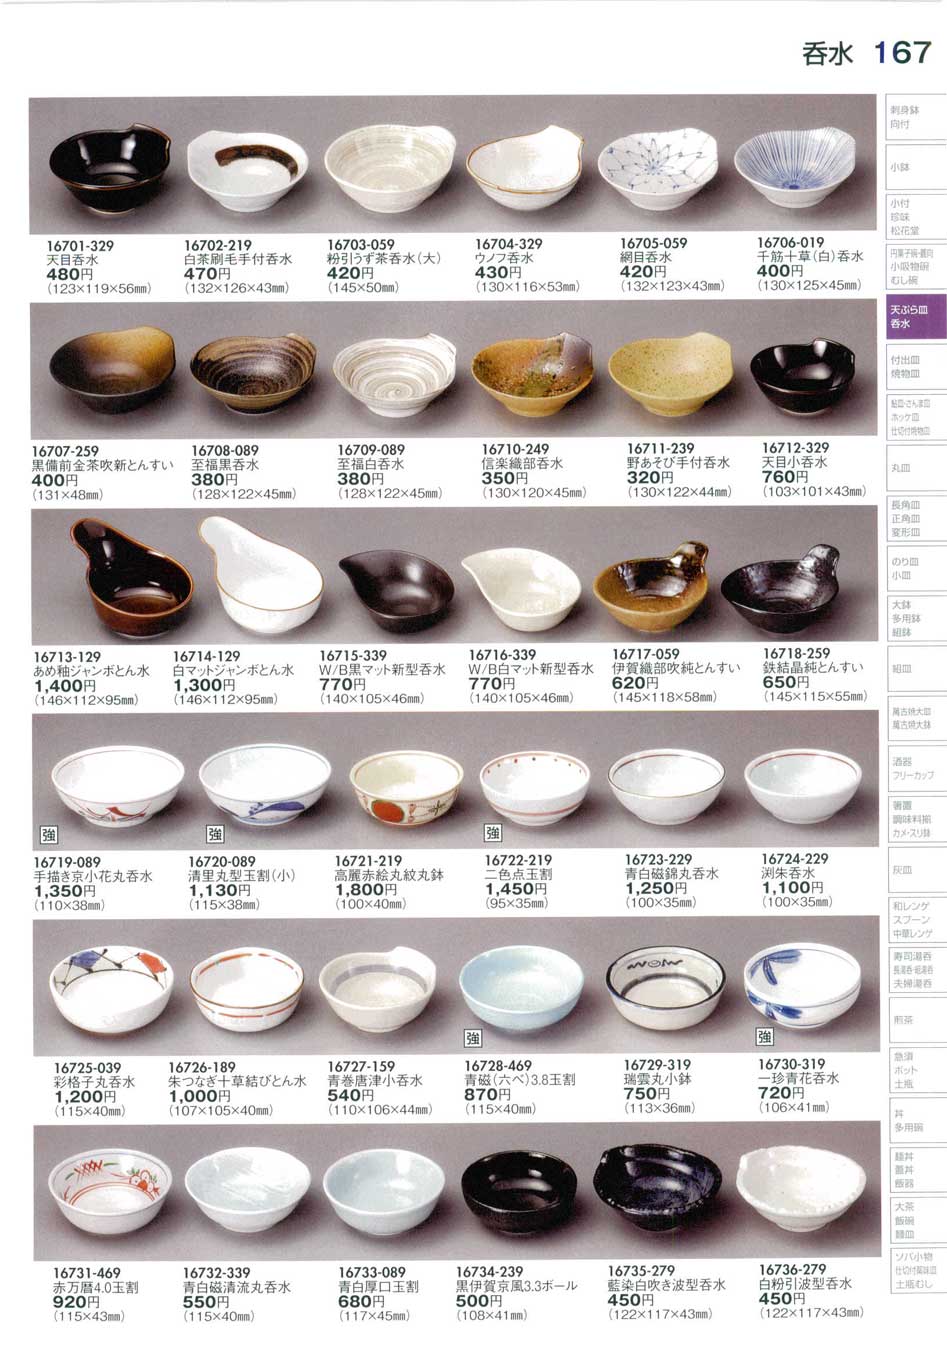 食器 呑水Small Bowl for Tempura Sauce 陶里２９－167ページ